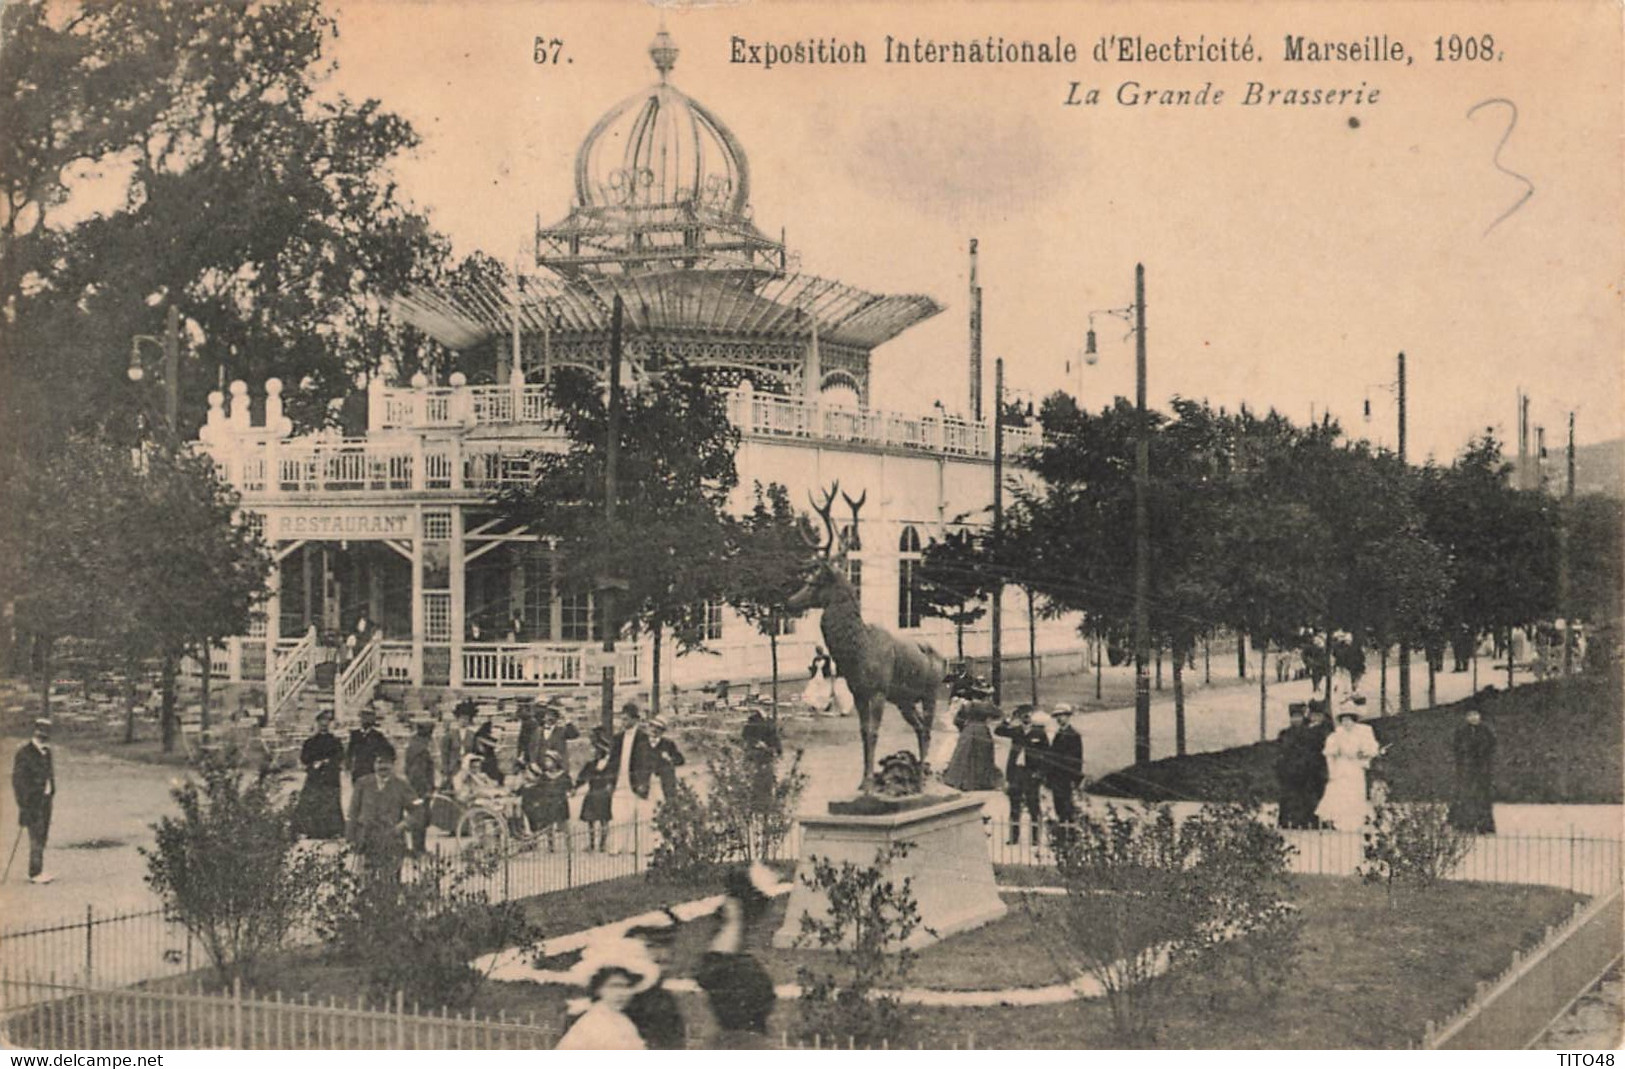 France (13 Marseille) - Exposition Internationale D'Electricité 1908 - La Grande Brasserie - Mostra Elettricità E Altre